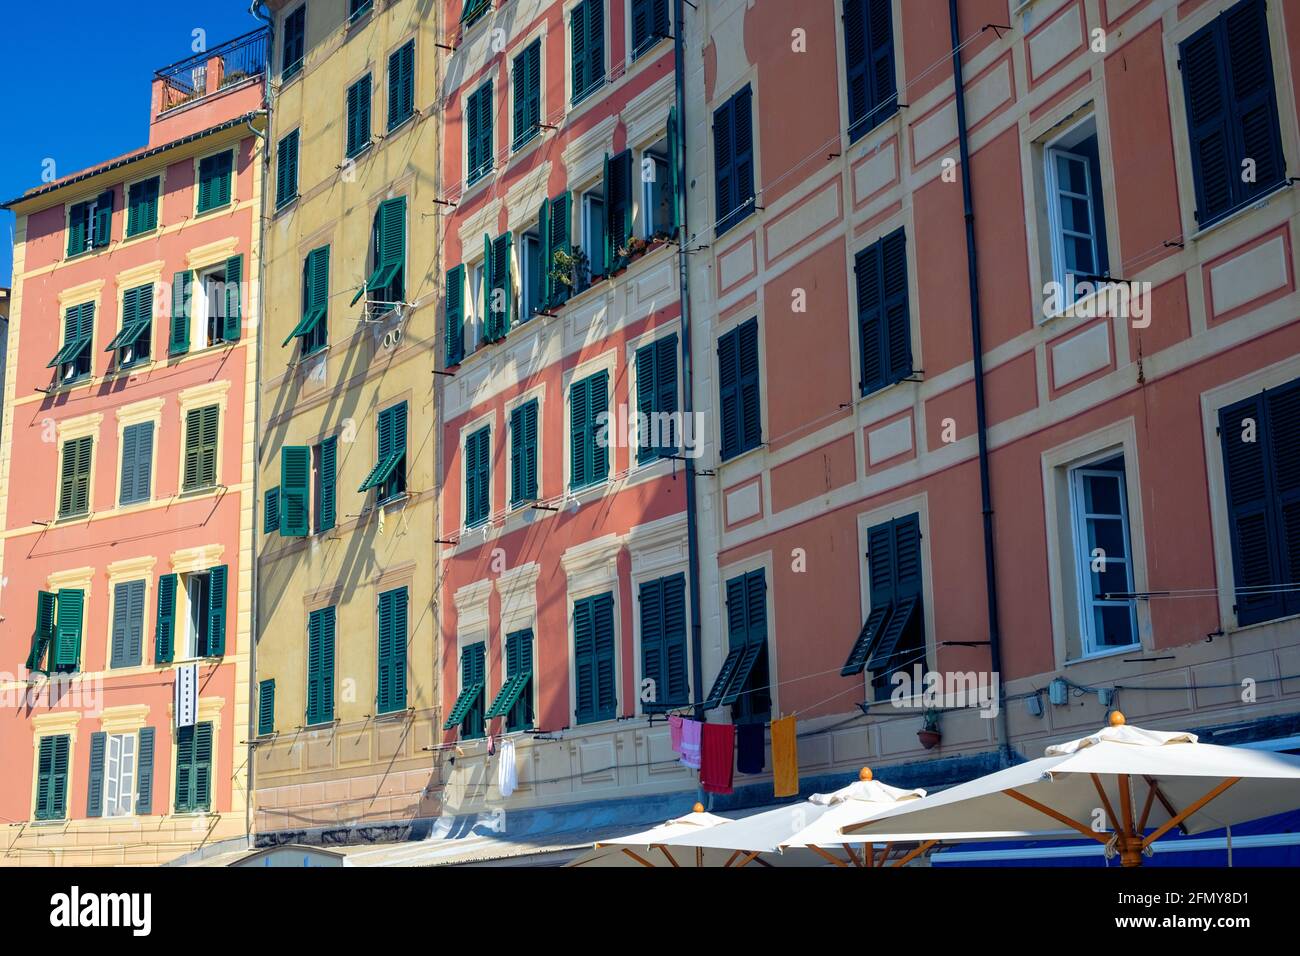 Façades avant d'une rangée de grandes maisons anciennes de Camogli. Ces hauts bâtiments colorés sont typiques de cette ville. Banque D'Images